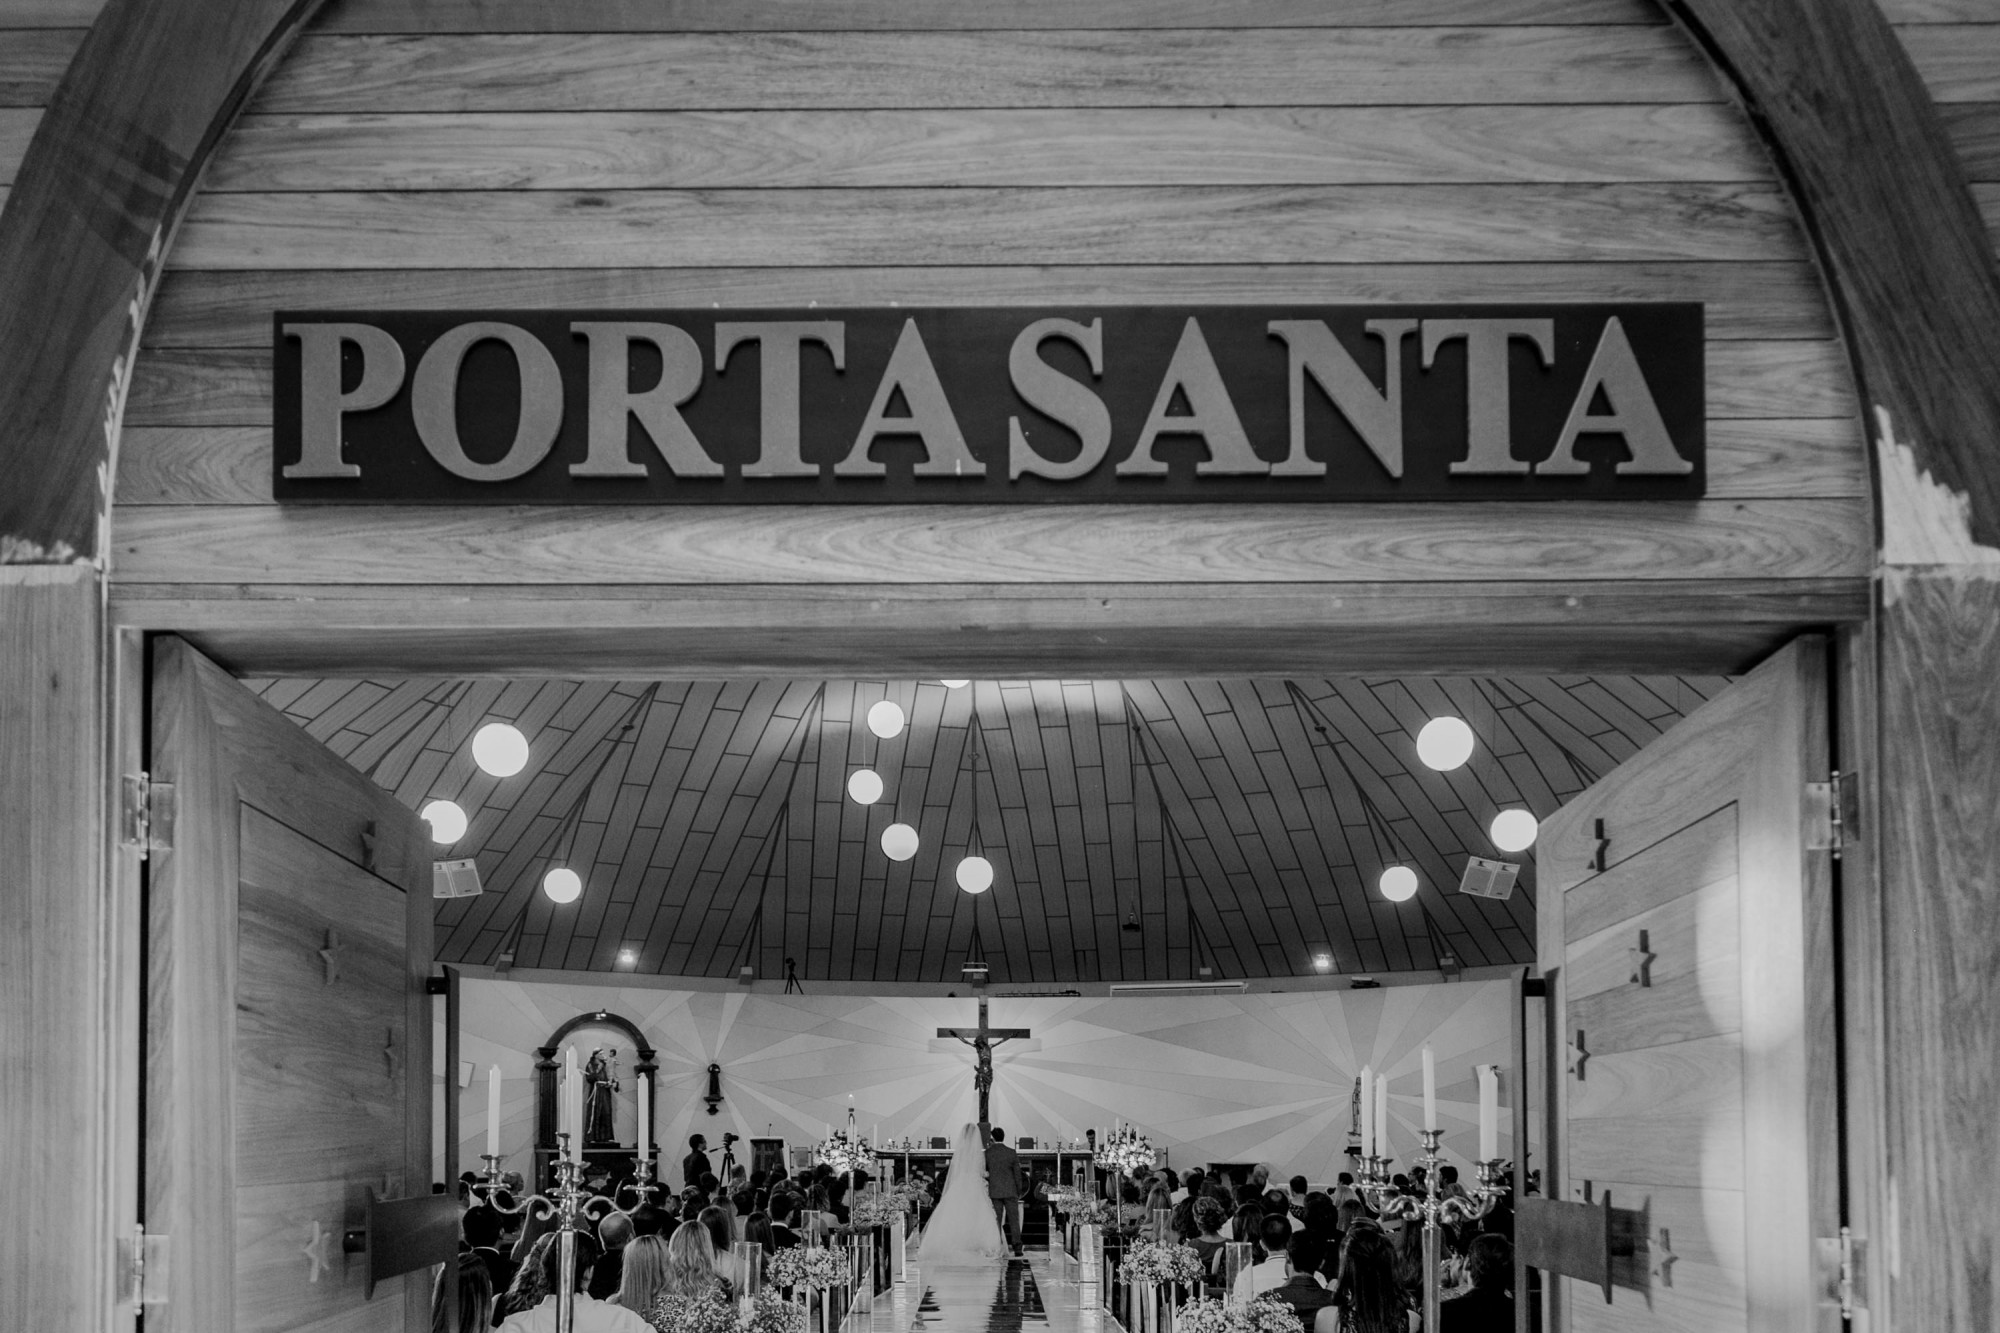 Casamento Anderson e Juliana Fioreli em Iporã Paraná - por Lorran Souza e Léia Sotile - Fotografos de casamentos - JA-1446